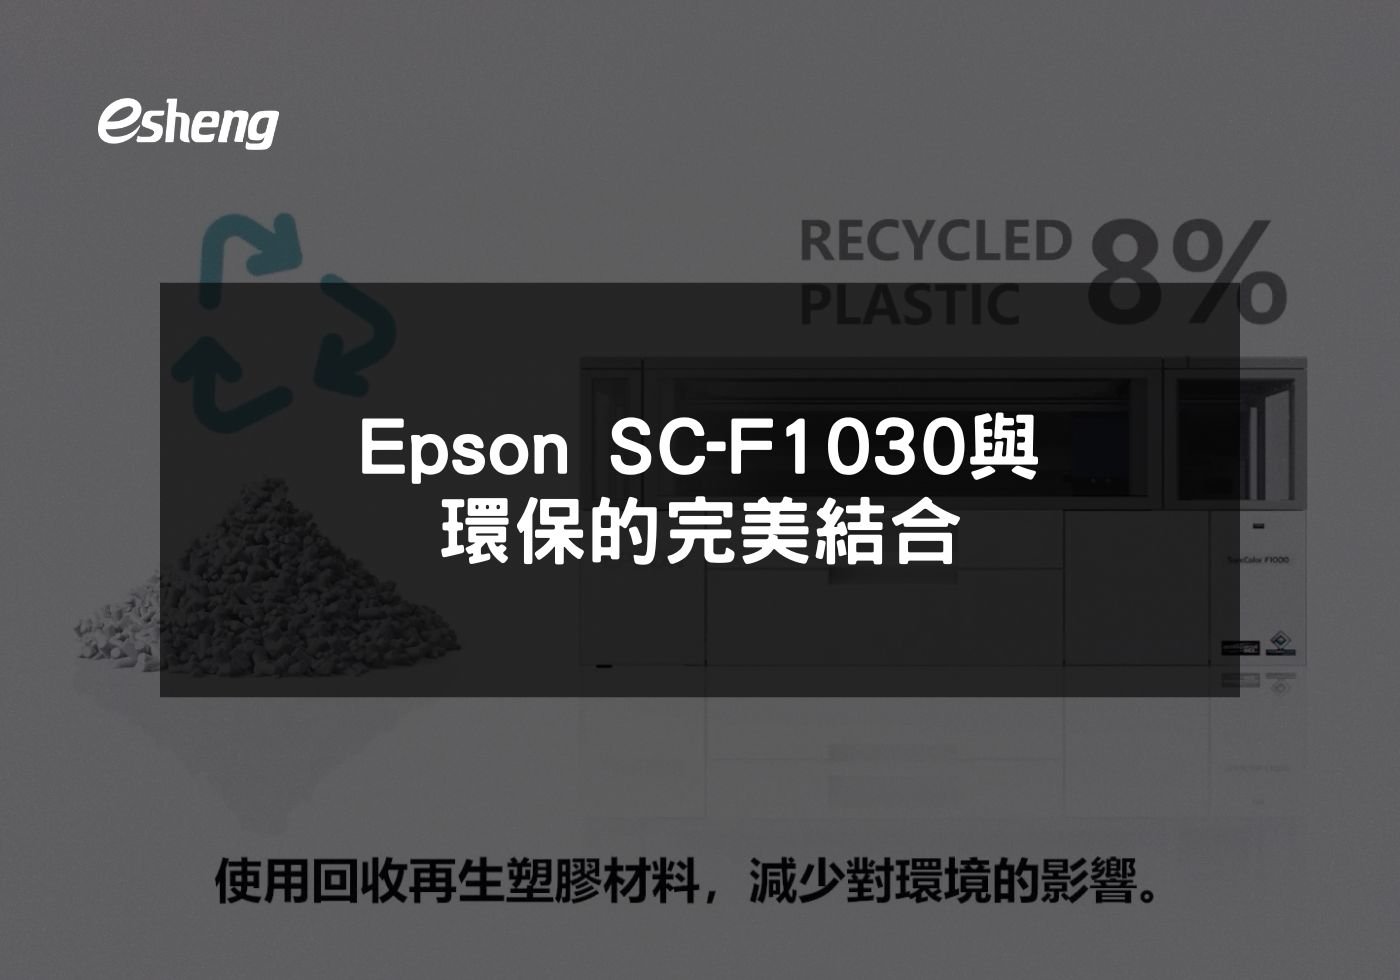 閱讀更多文章 Epson SC-F1030與環保的完美結合